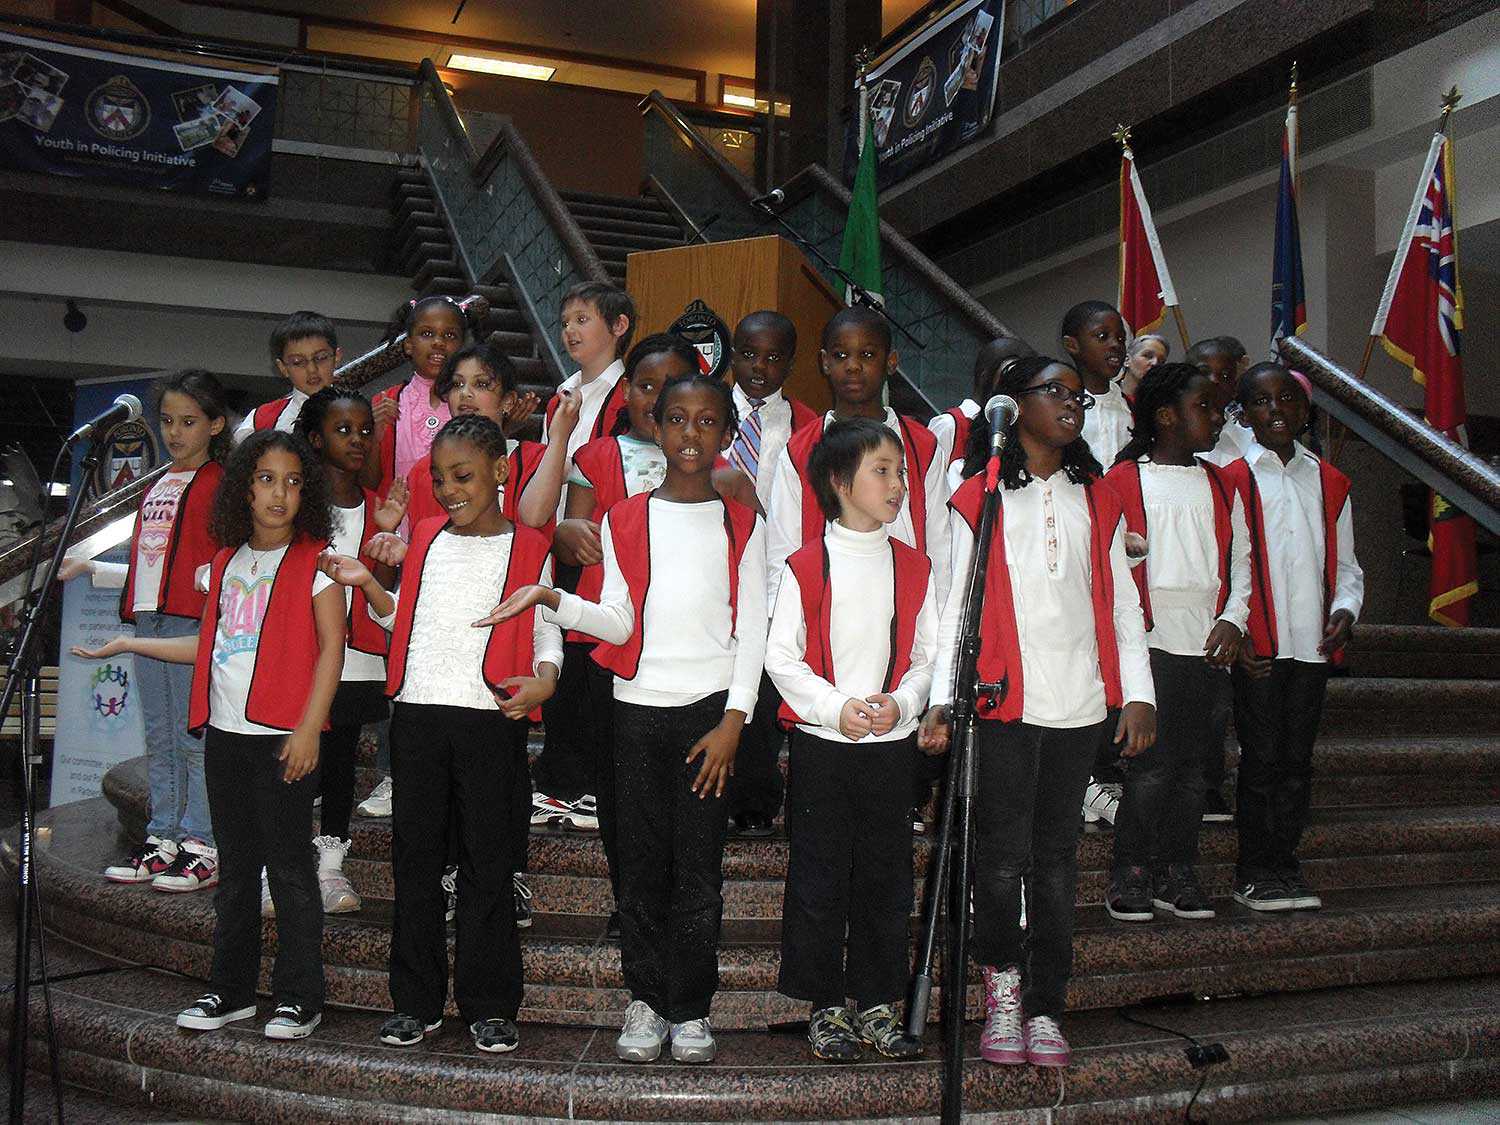 Les étudiants de l’école élémentaire catholique Saint-Jean-de-Lalande à Toronto célébrant la Journée internationale de la Francophonie le 23 mars 2012. (Source : Journal Canora, Toronto)